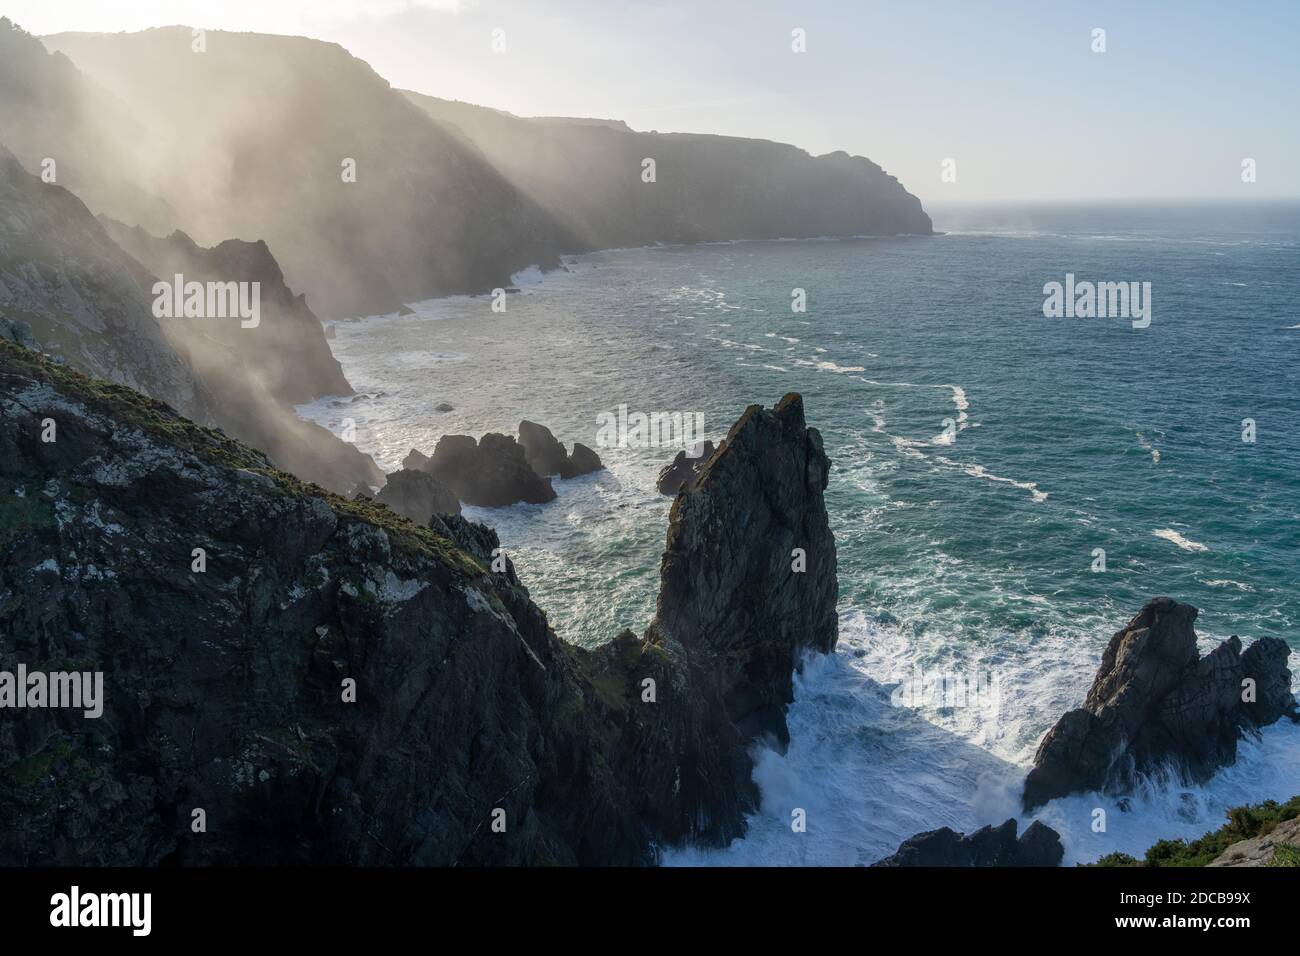 La costa rocciosa selvaggia della Galizia nel nord della Spagna a. Cabo Ortegal Foto Stock